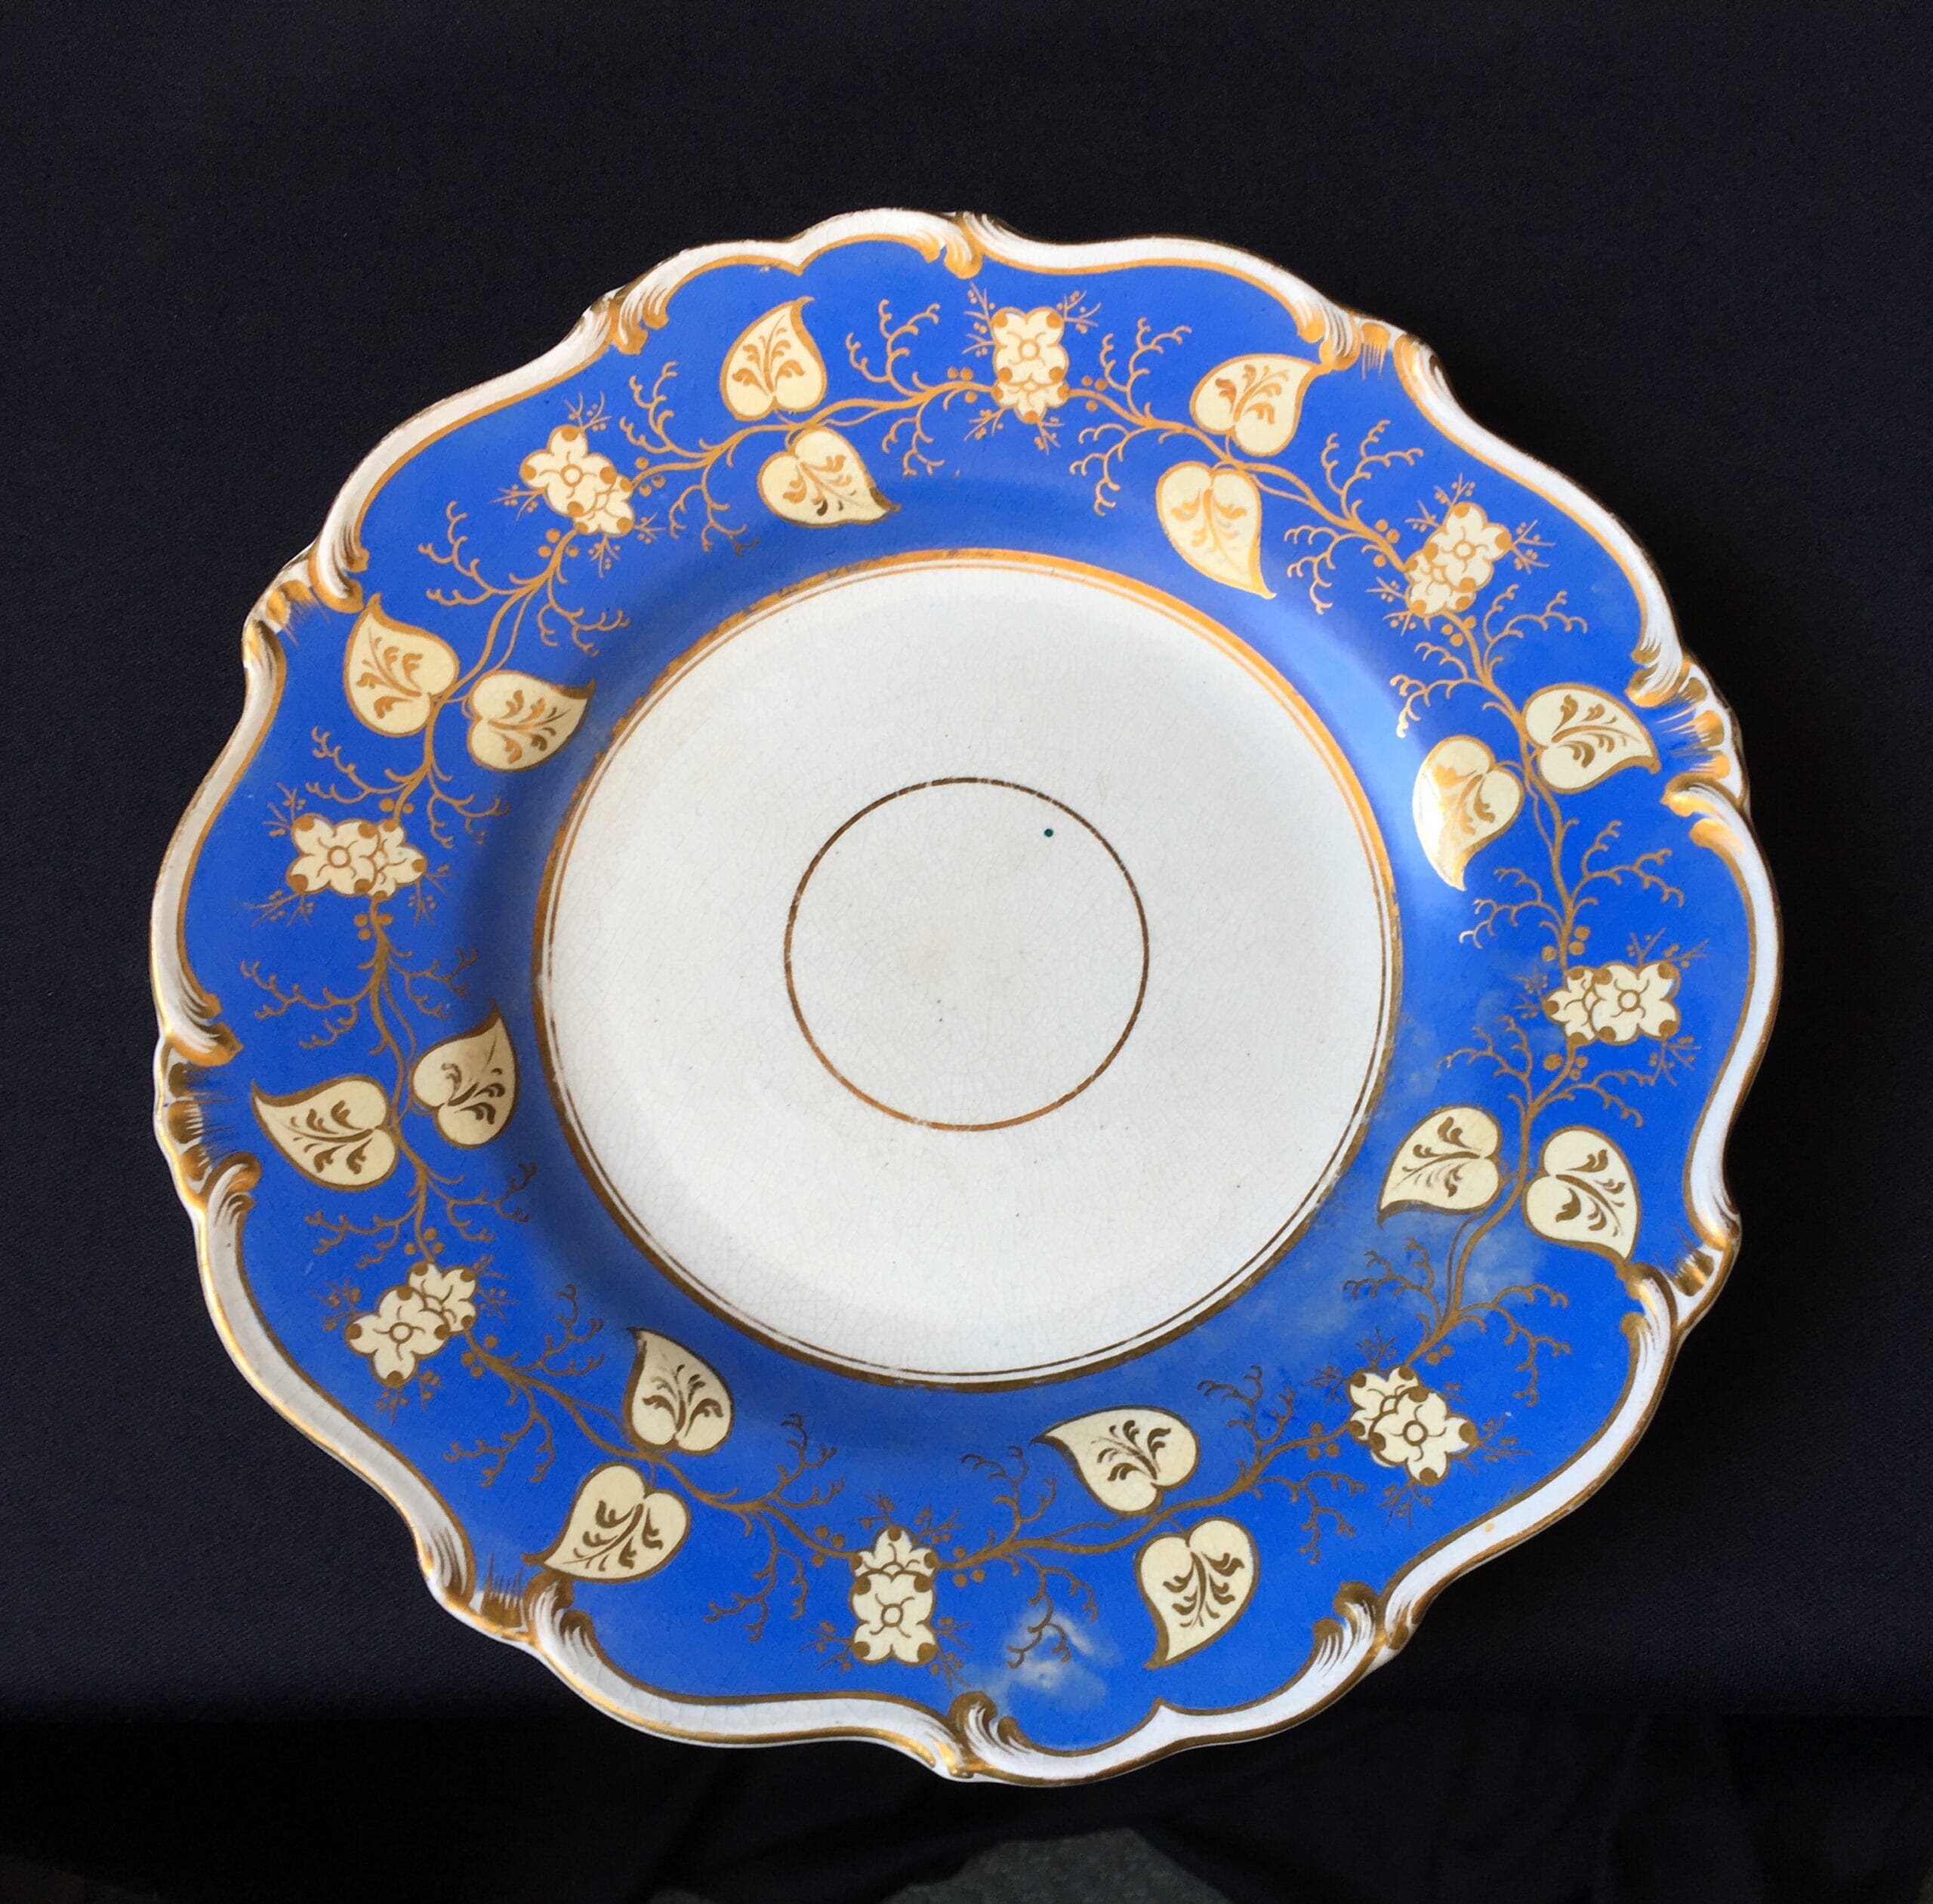 English pottery plate, stylized foliage on blue, c. 1835-0